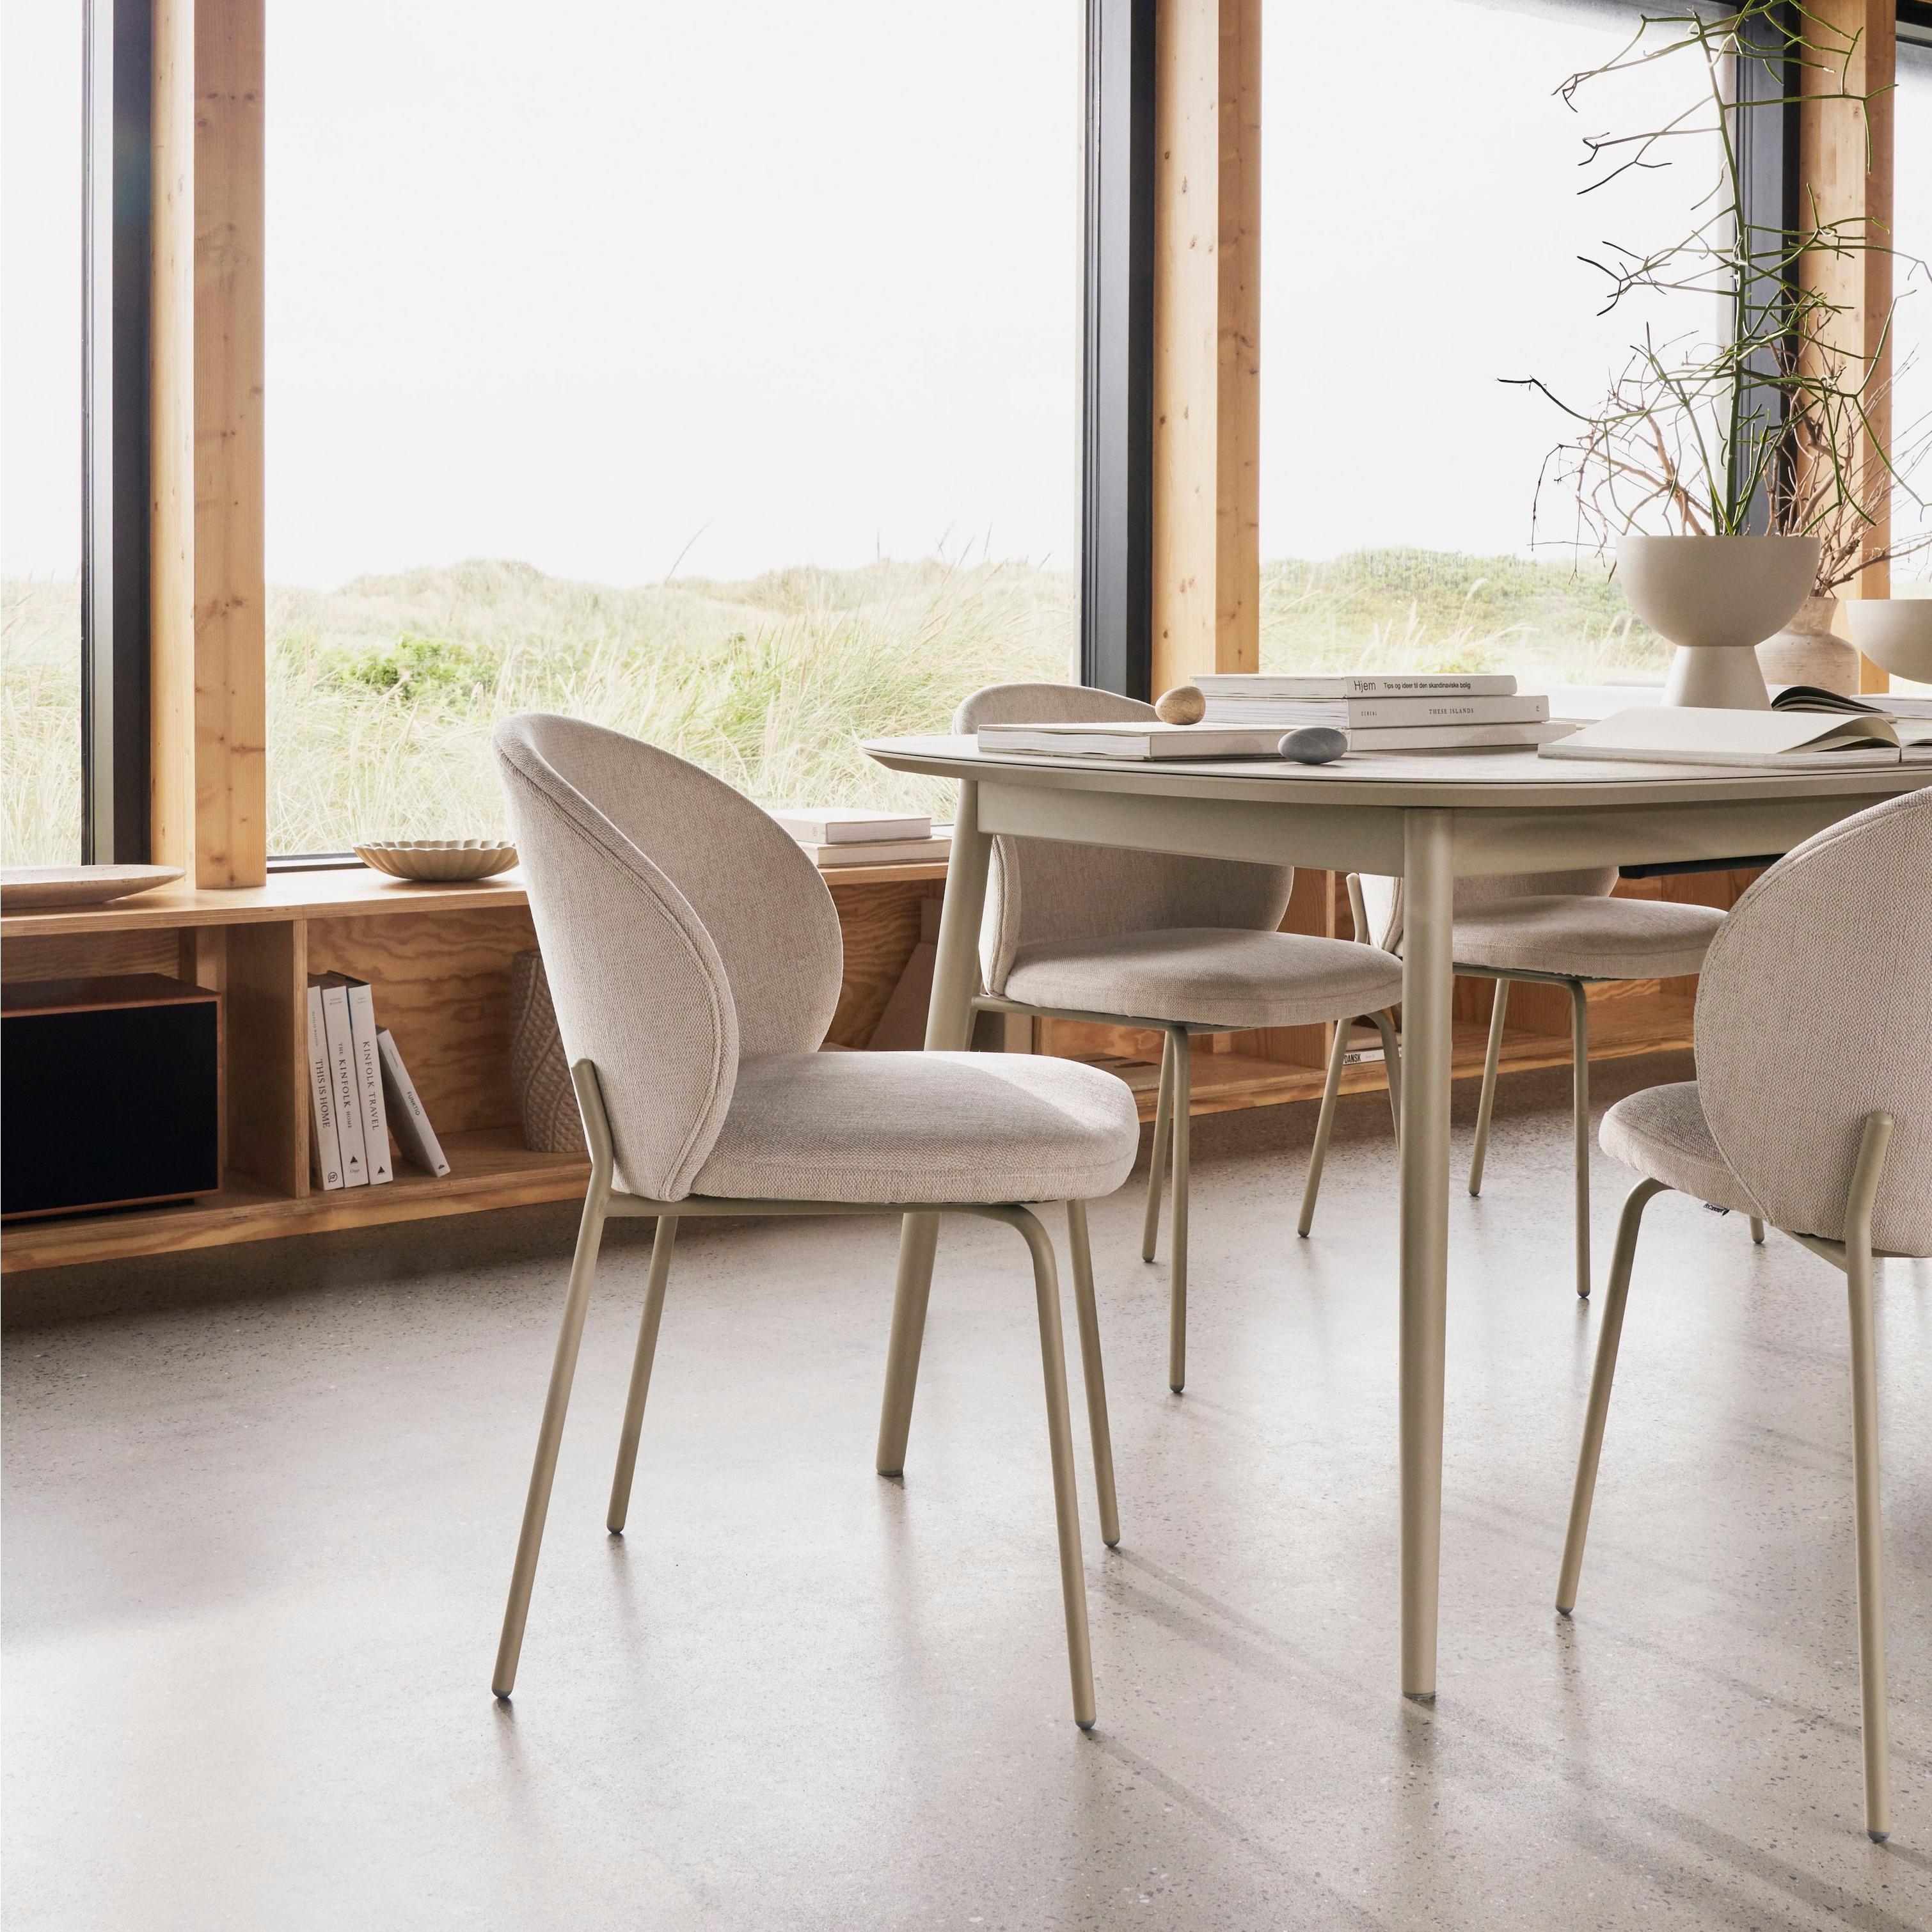 Une salle à manger contemporaine lumineuse avec la table de repas Kingston et les chaises Princeton.